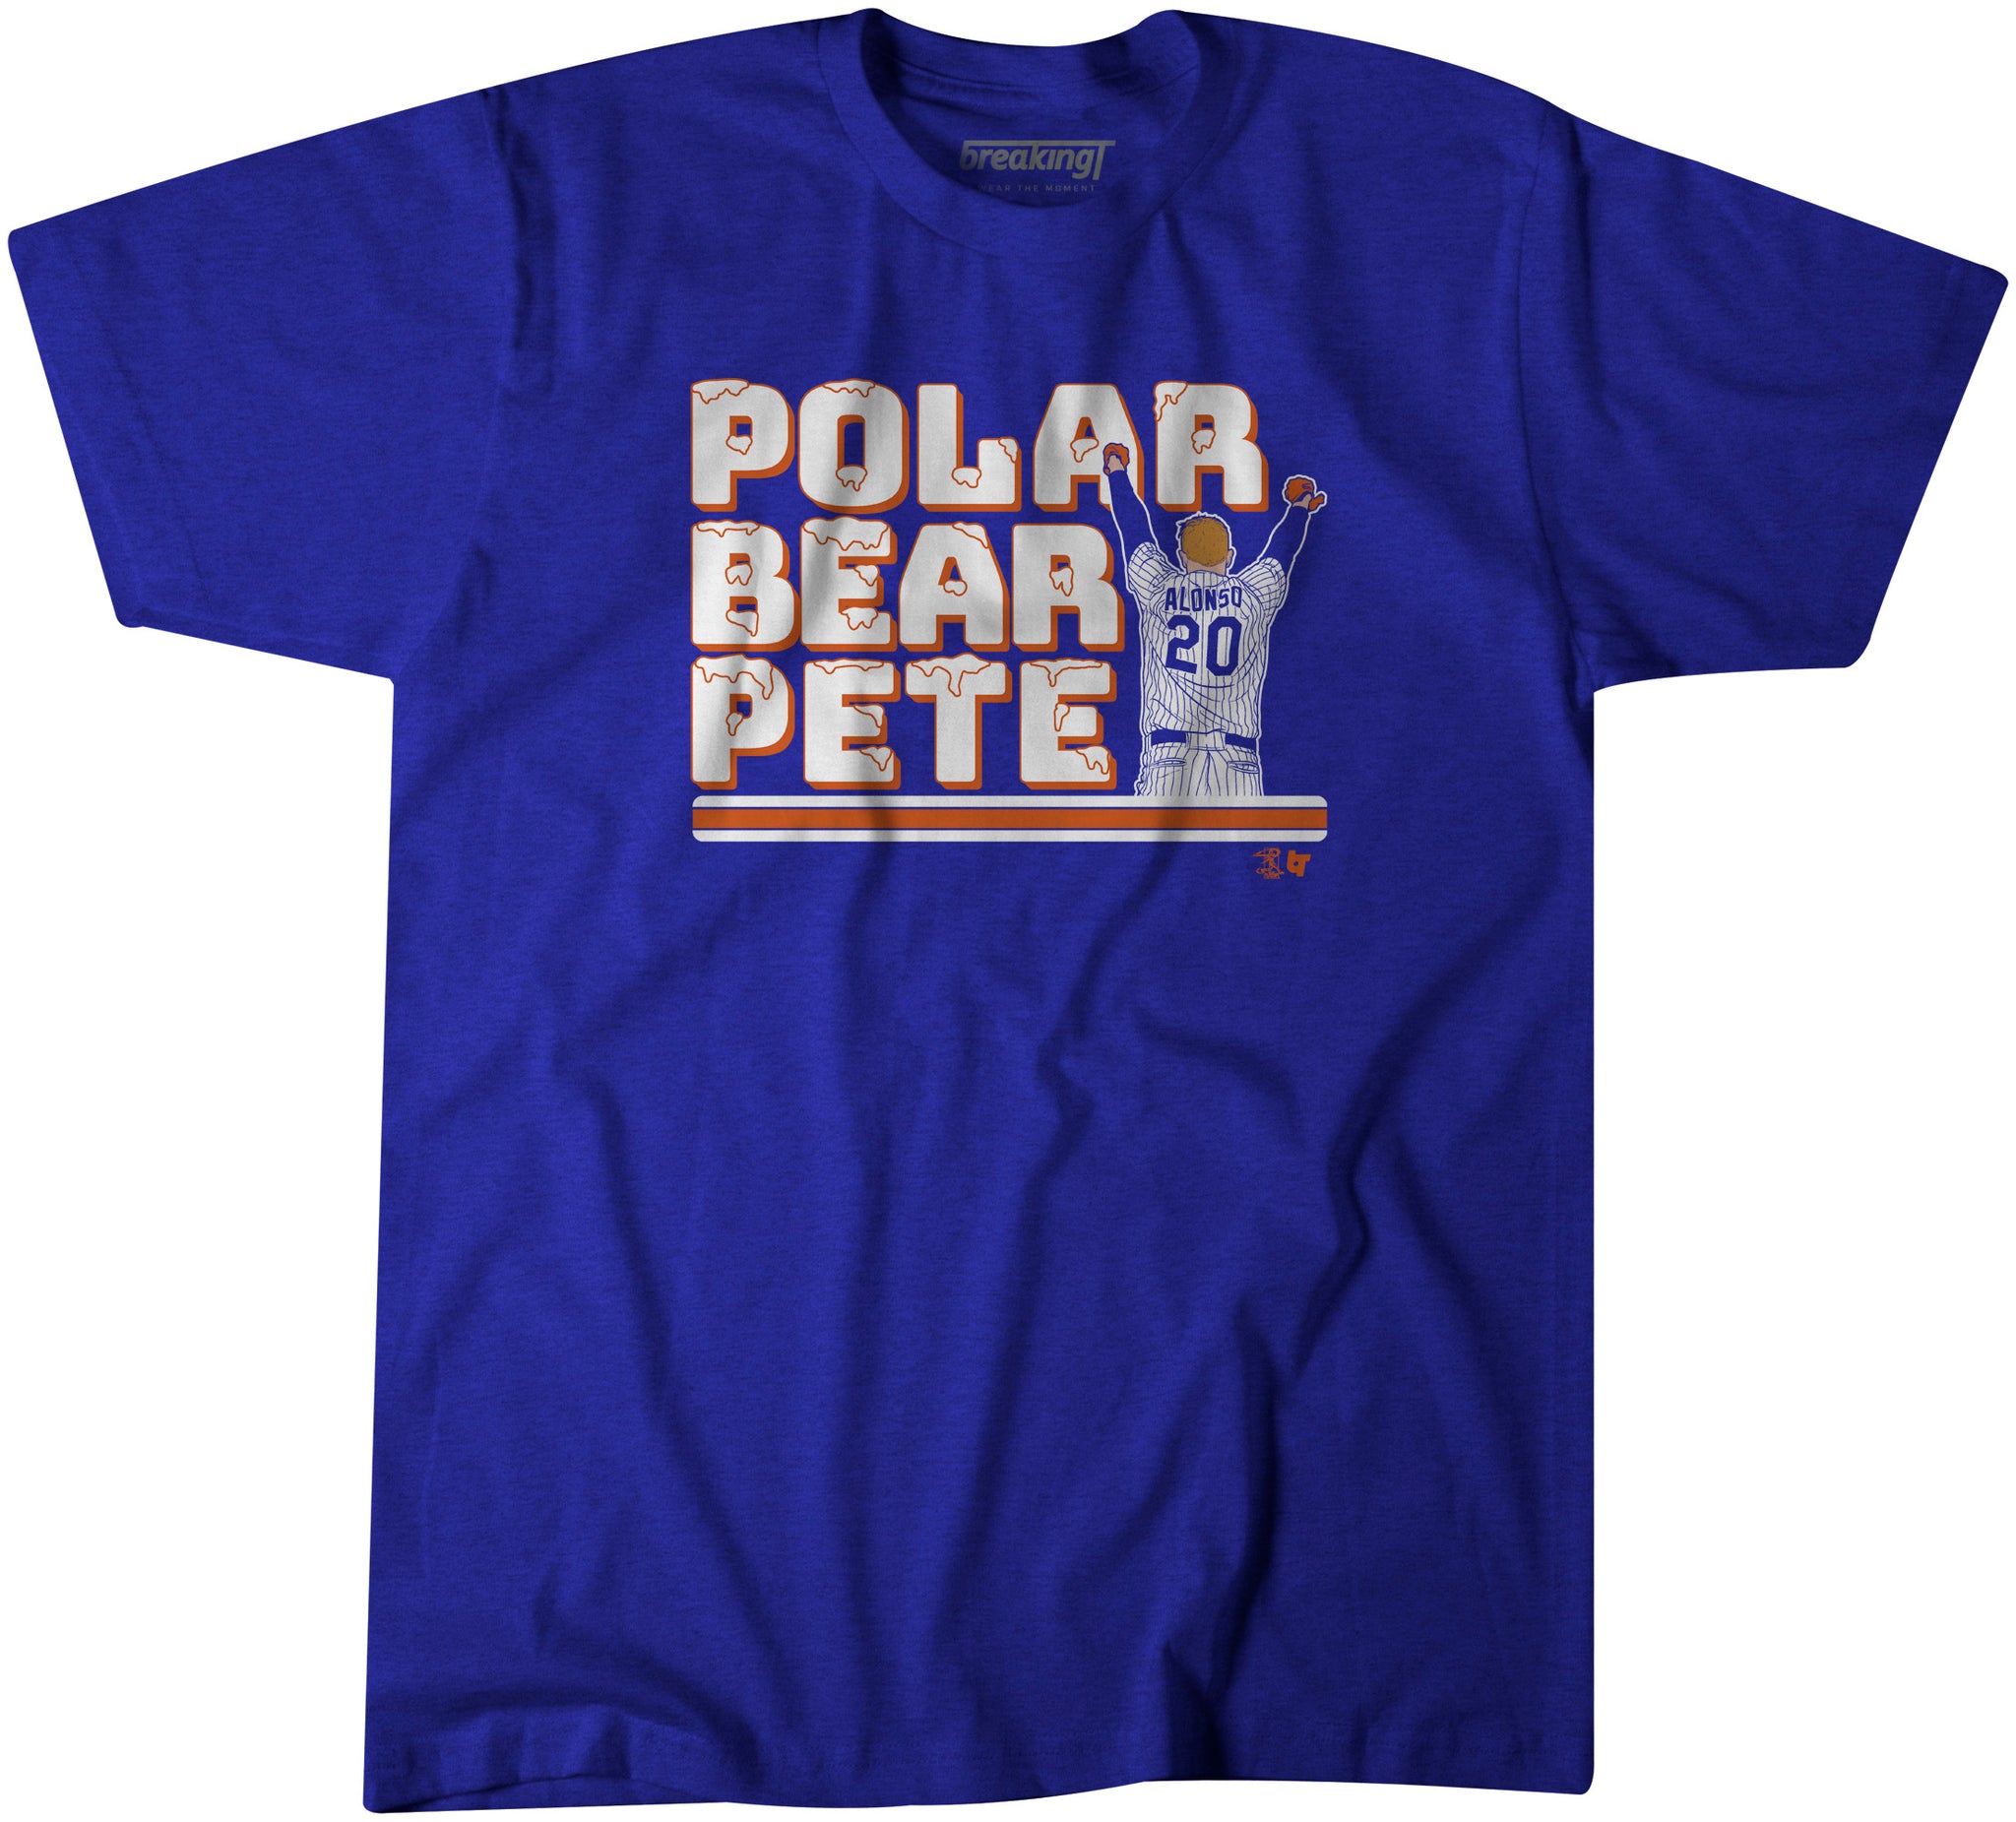 pete alonso polar bear jersey